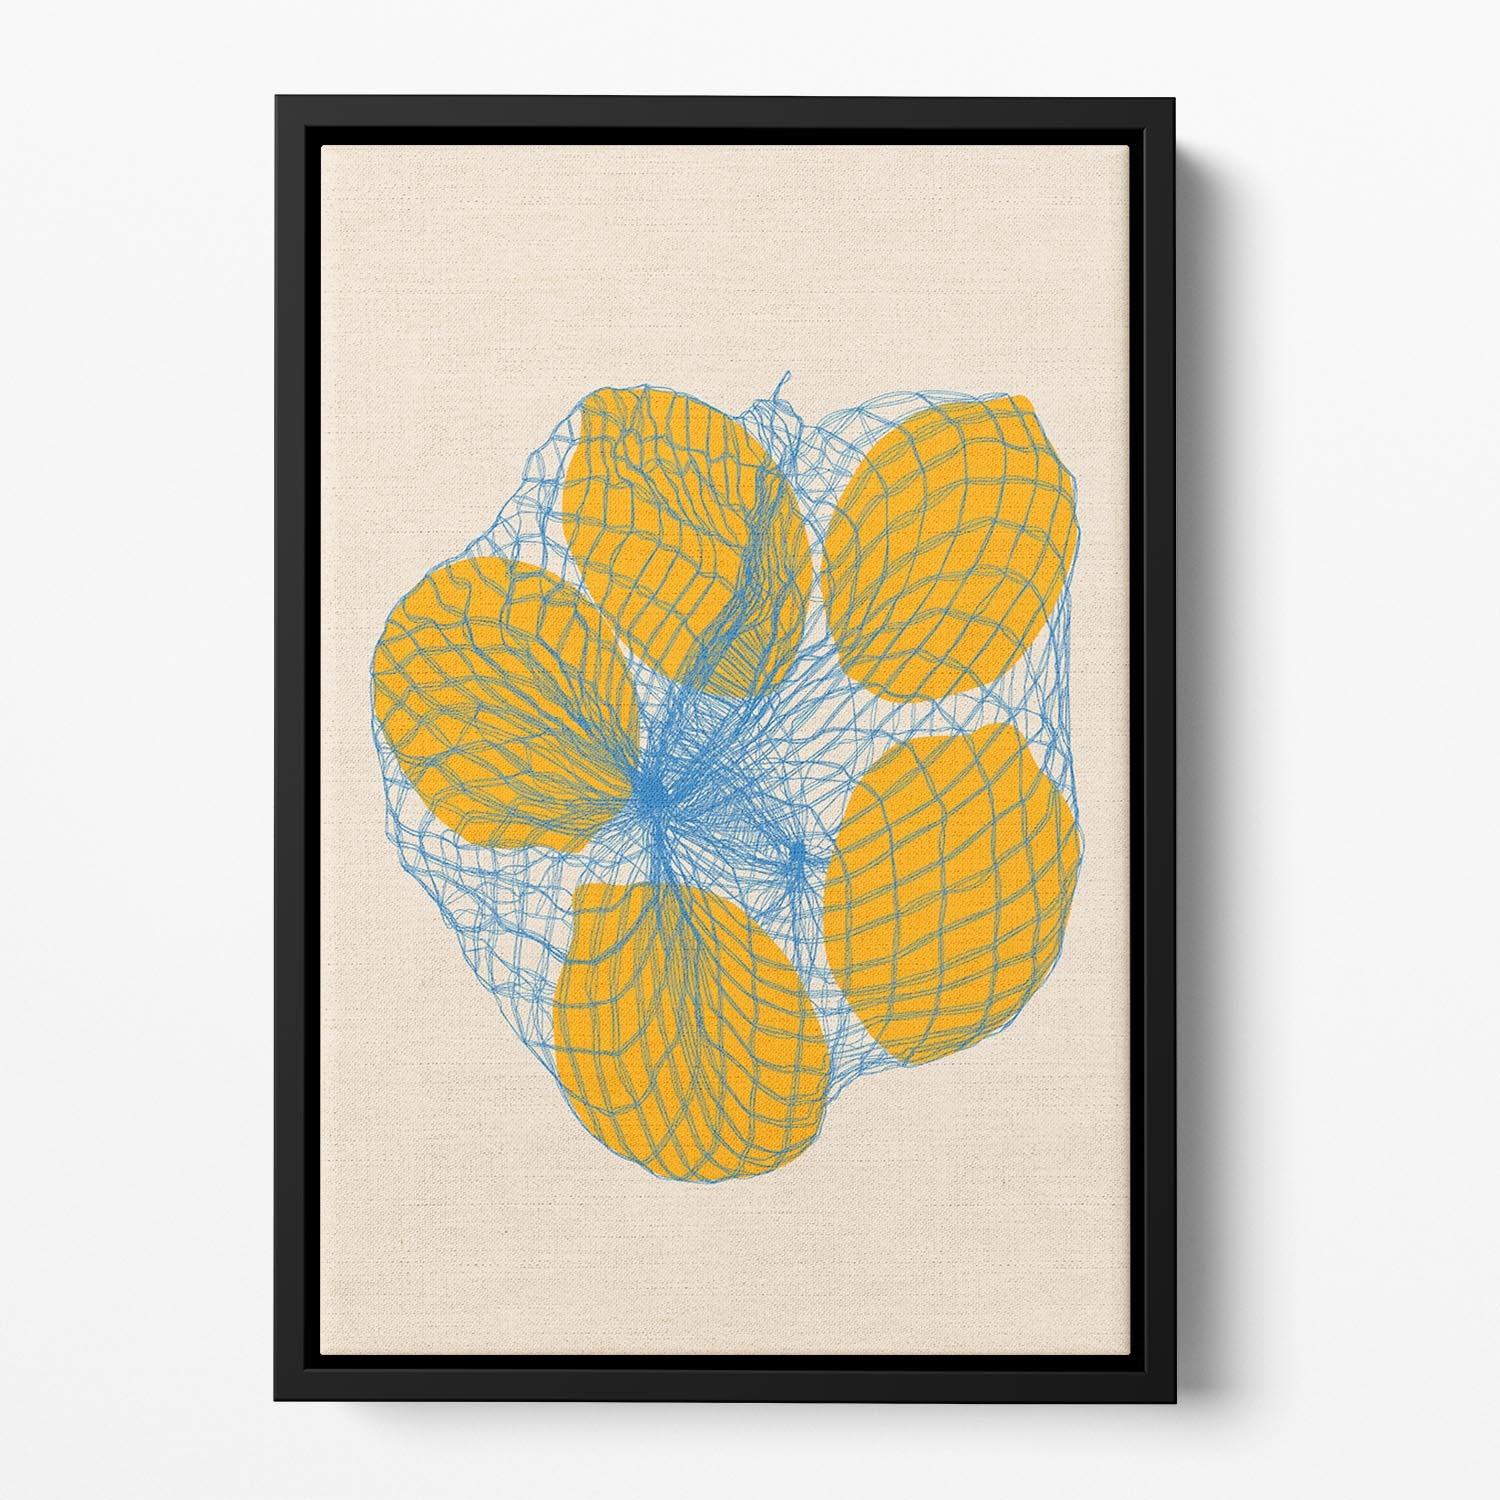 Five Lemons In a Net Bag Floating Framed Canvas - Canvas Art Rocks - 2